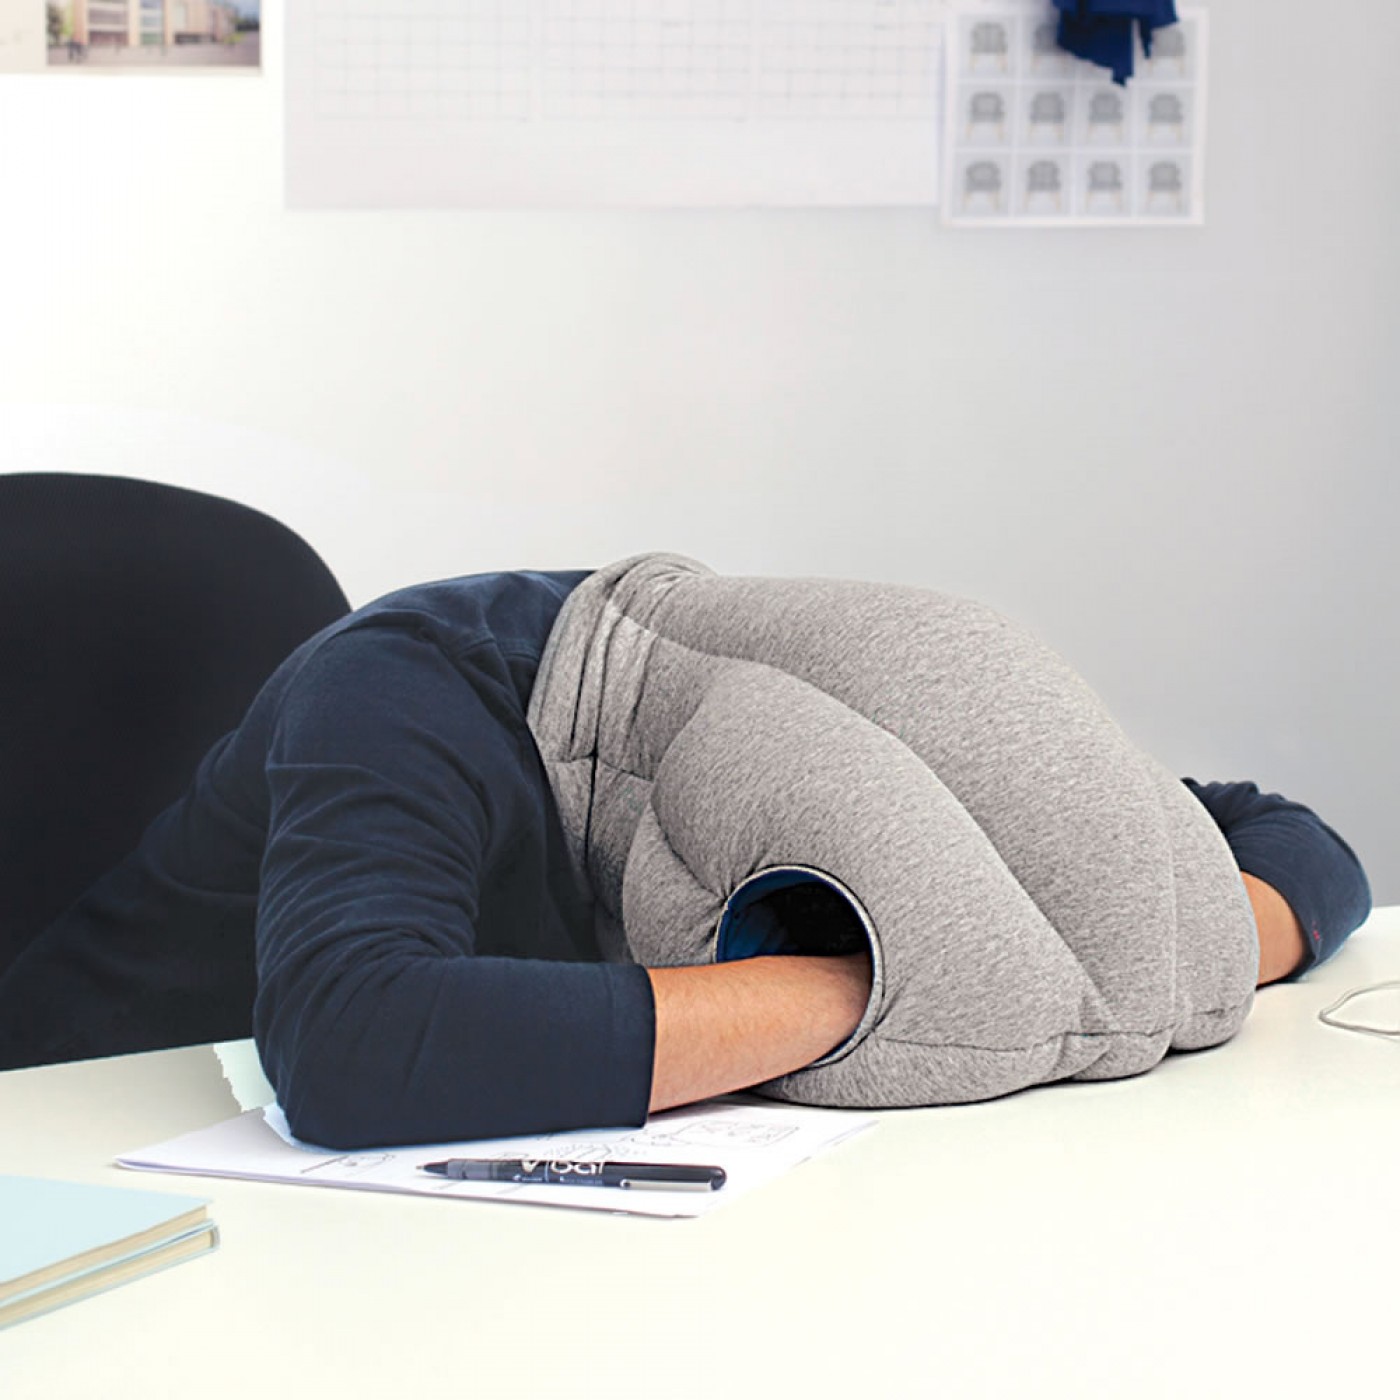 Затылок сон. Острич Пиллоу. Подушка Ostrich Pillow. Подушка для сна на рабочем месте. Подушка для сна в офисе.